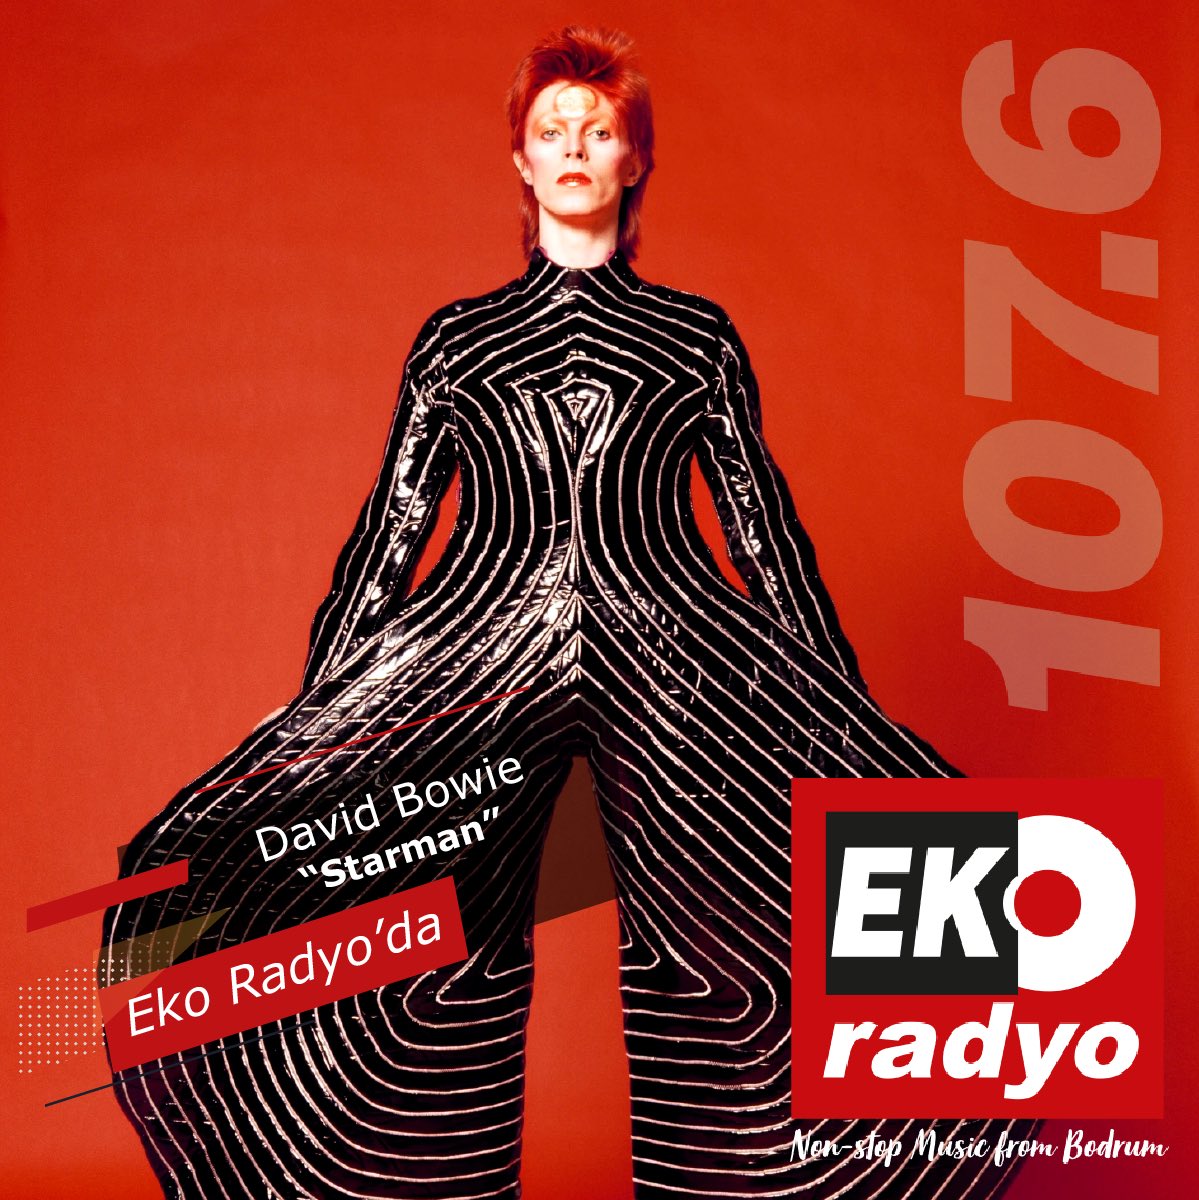 David Bowie – “Starman', Eko Radyo'da! 🎶 Dinlemek için tıklayın 👉🏻 ekoradyo.com.tr #ekoradyo #nostalji #retro #radio #radyo #davidbowie #starman